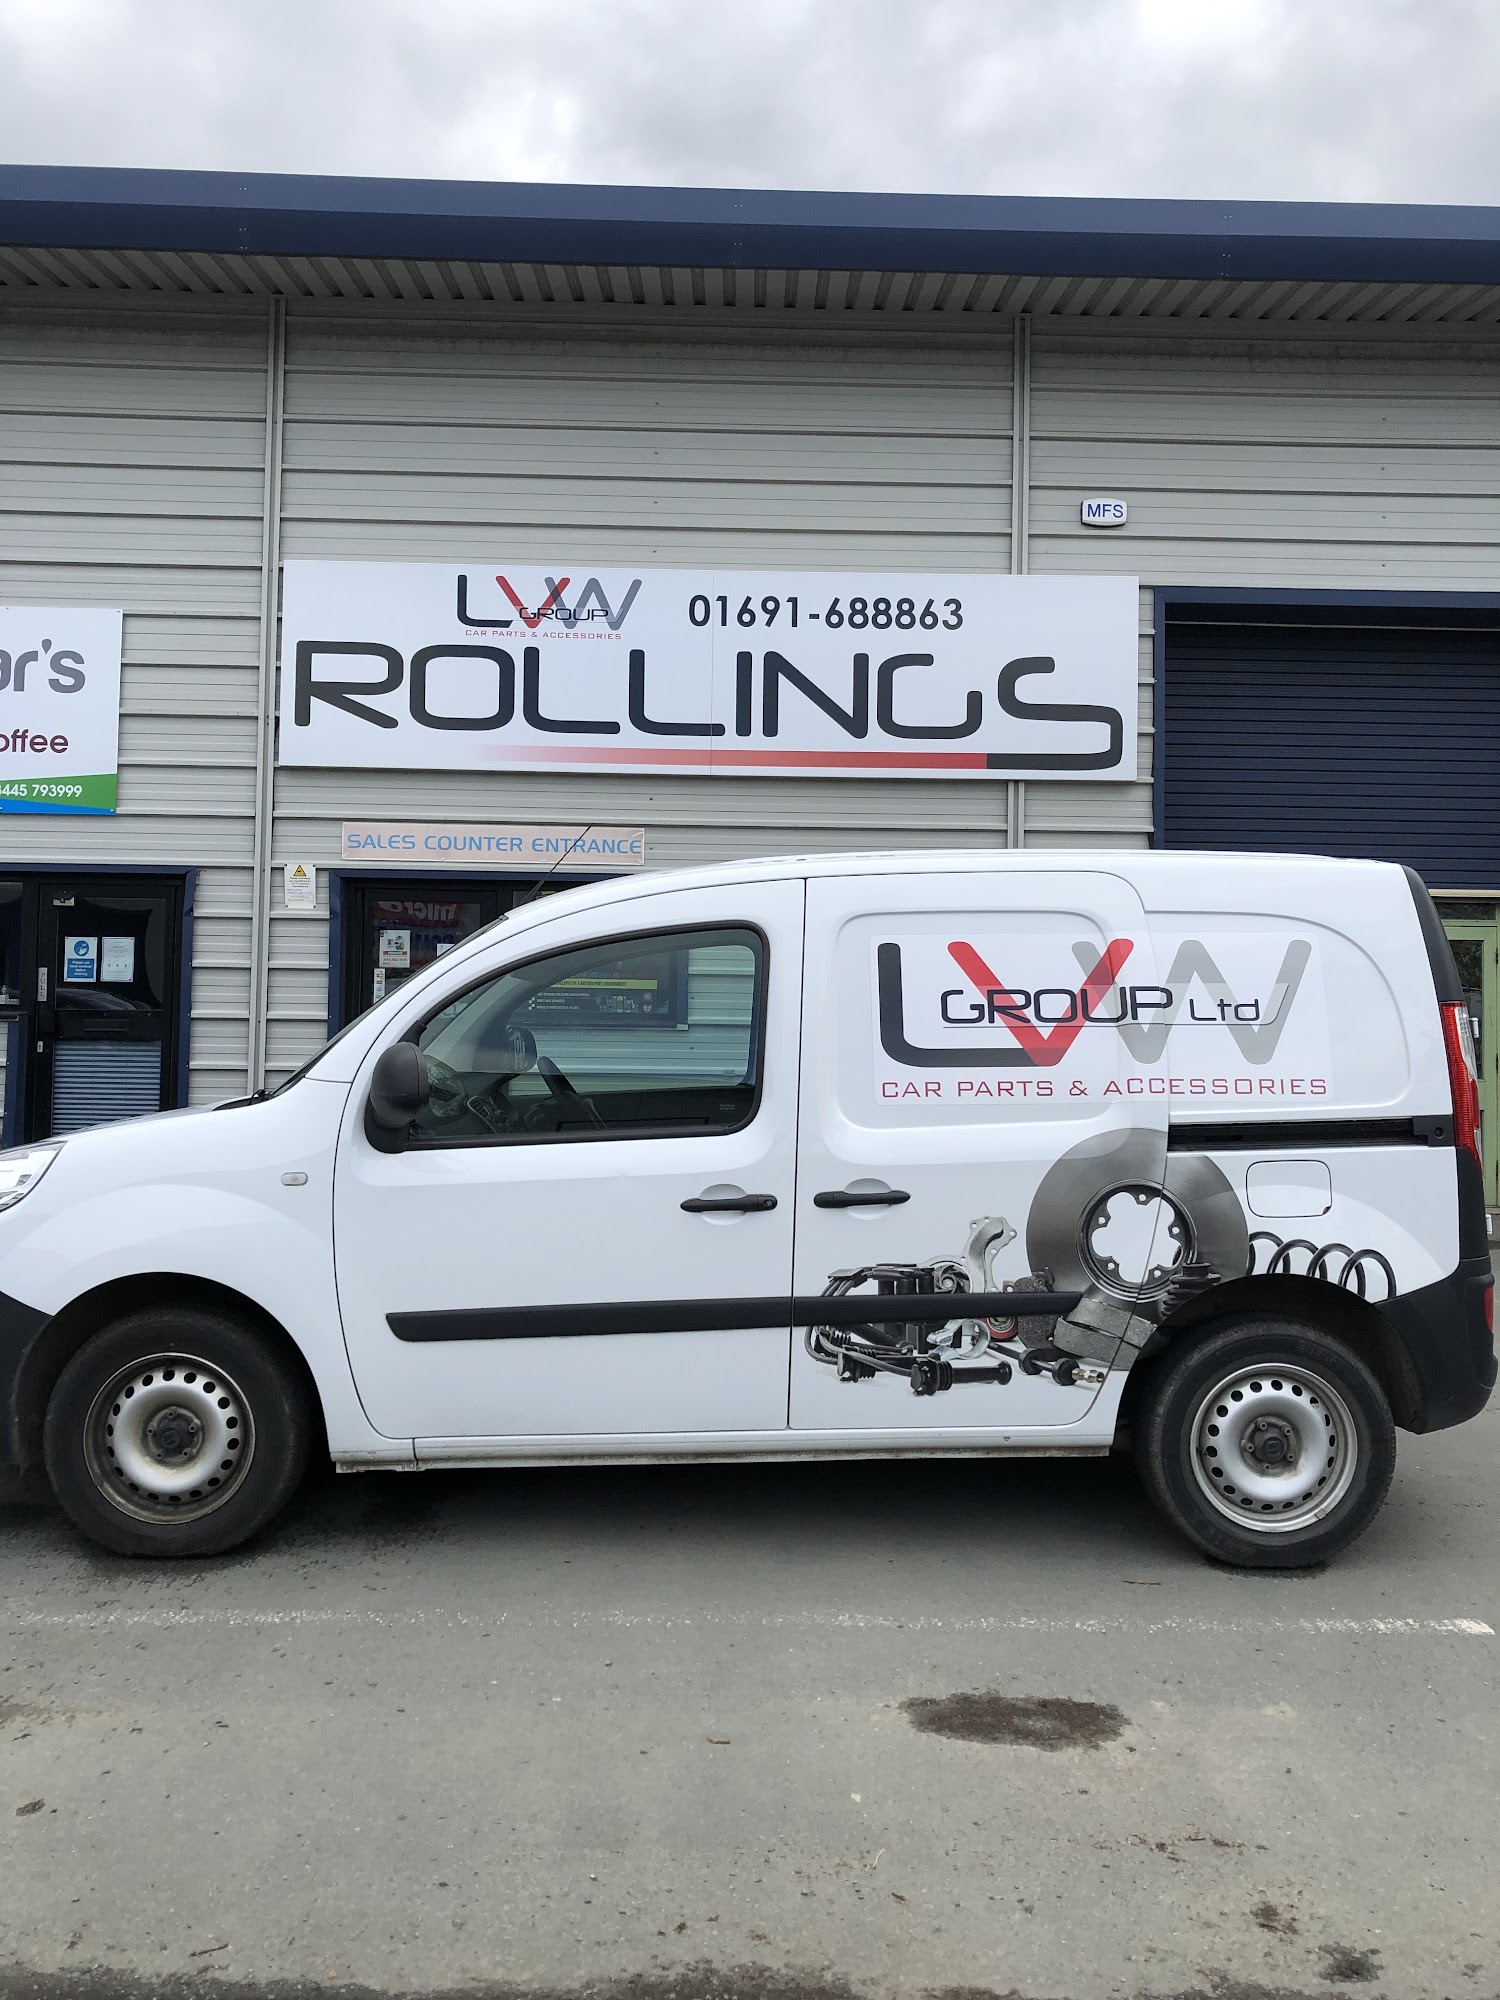 Rollings (LVW Group Ltd) Oswestry